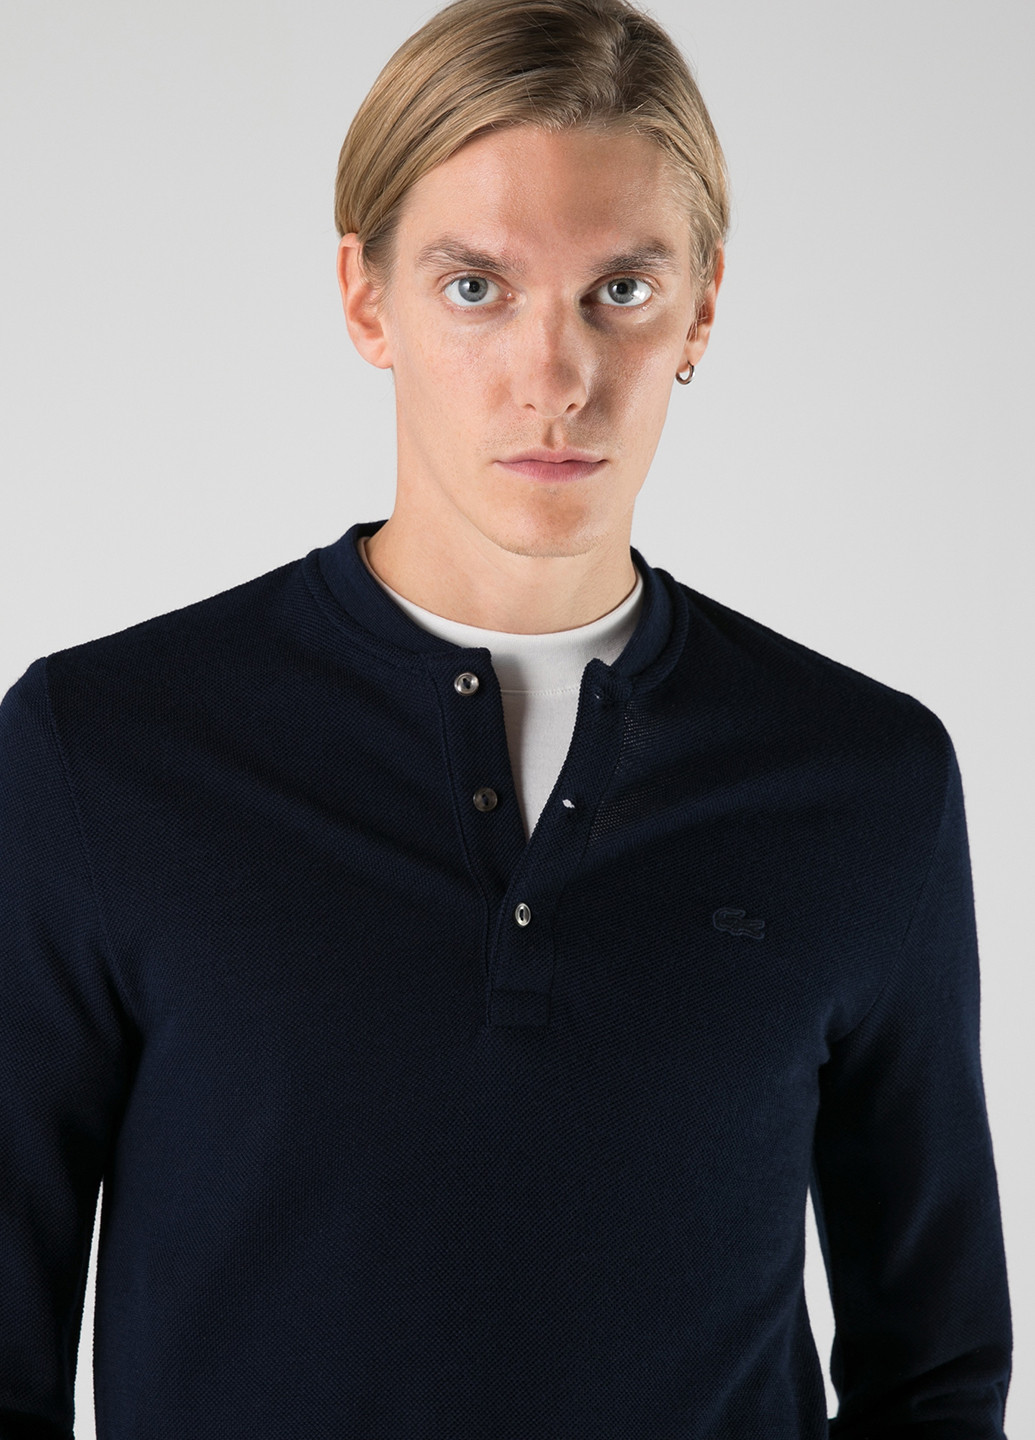 Темно-синяя футболка-поло для мужчин Lacoste однотонная